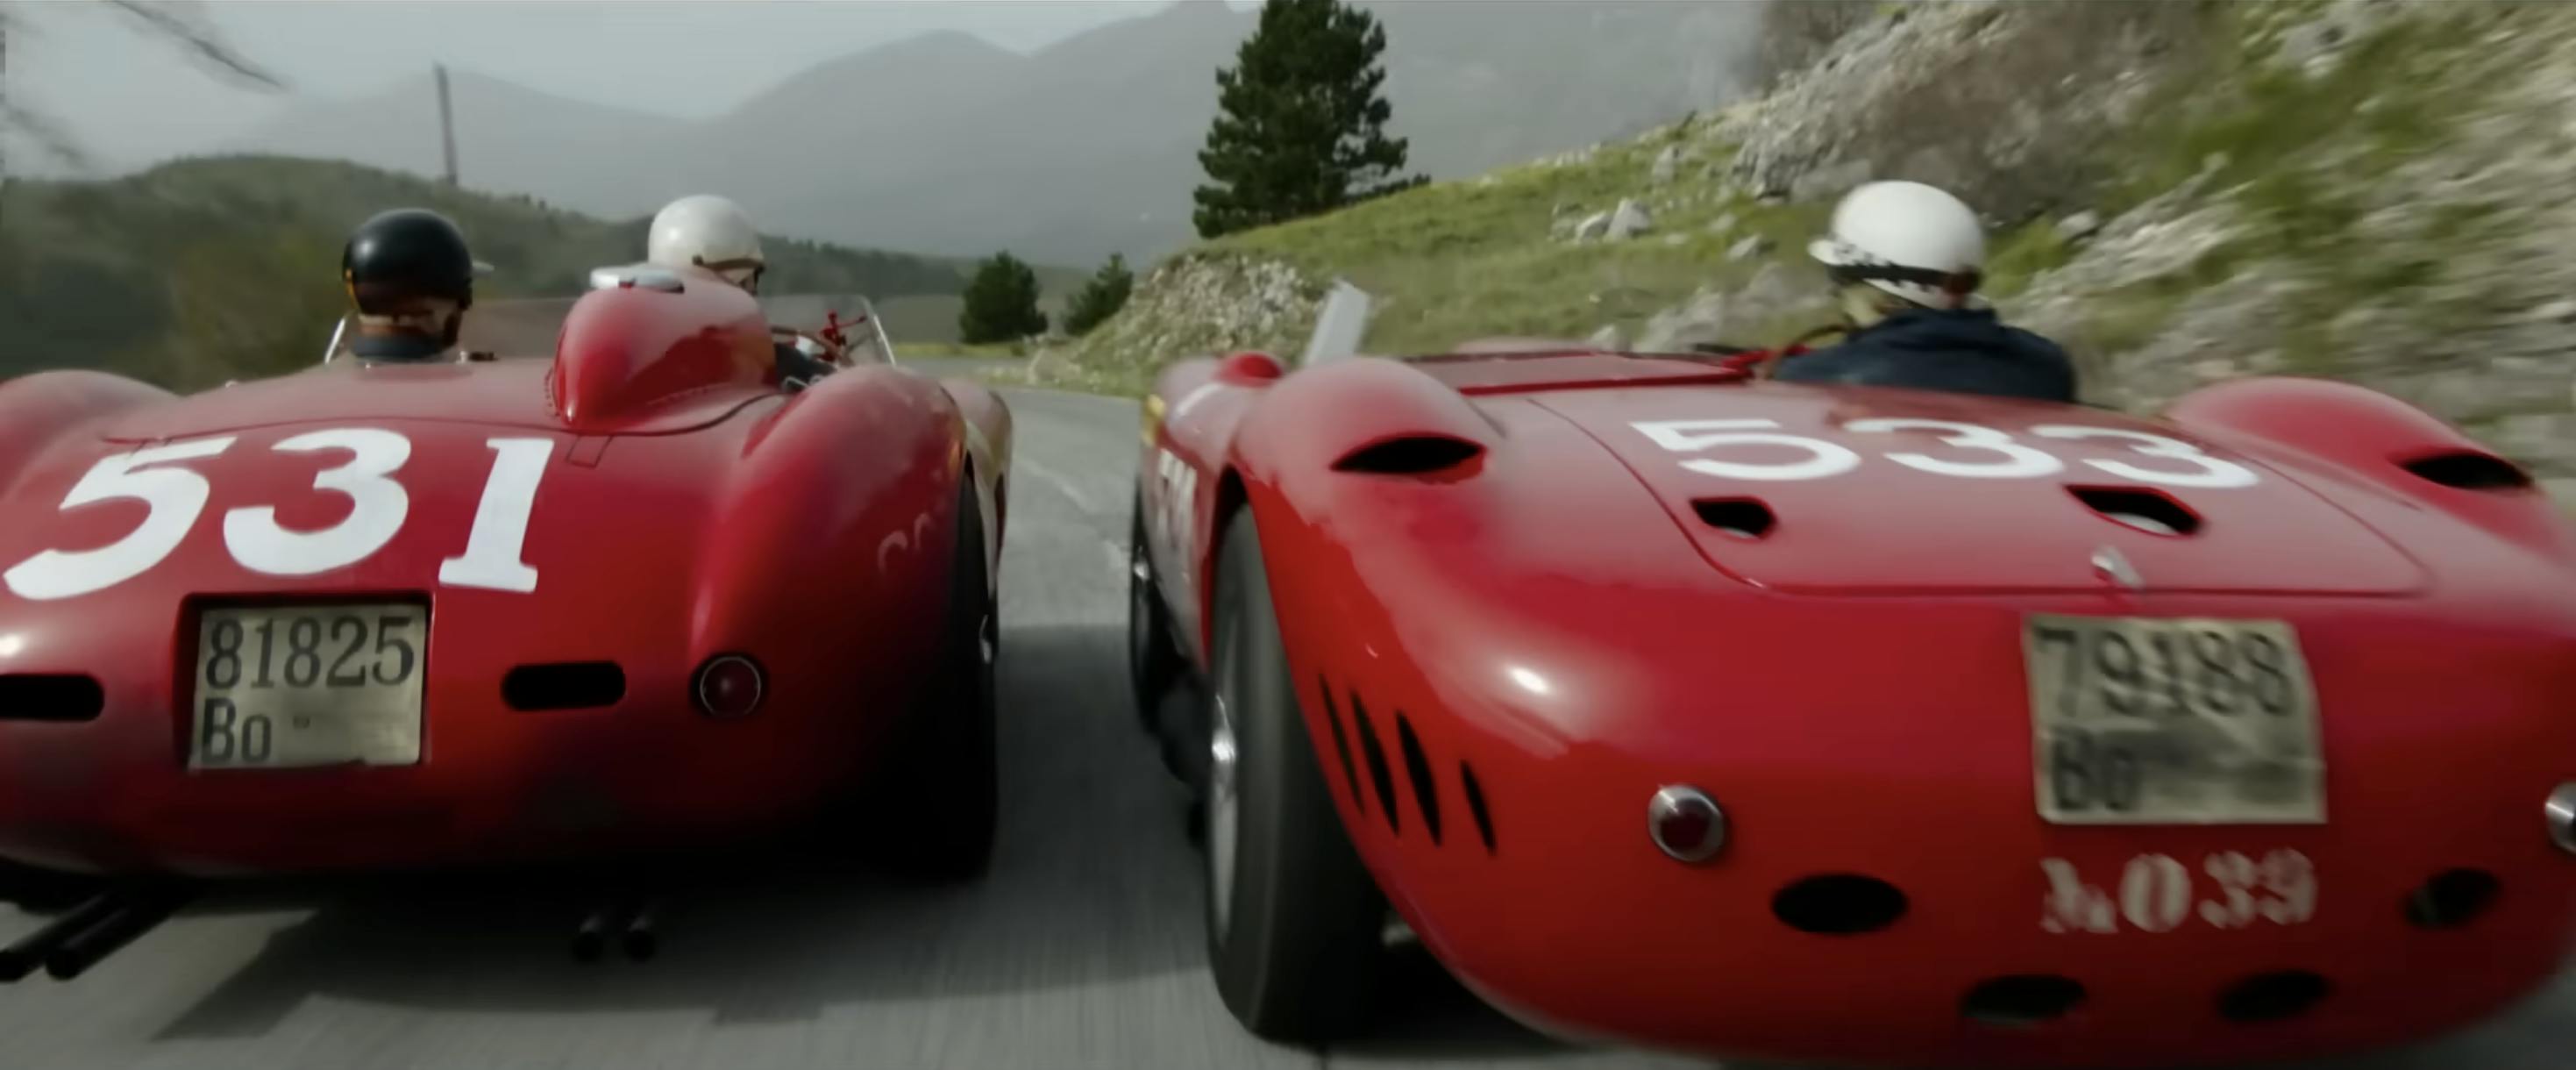 Ferrari film racing action still head to head